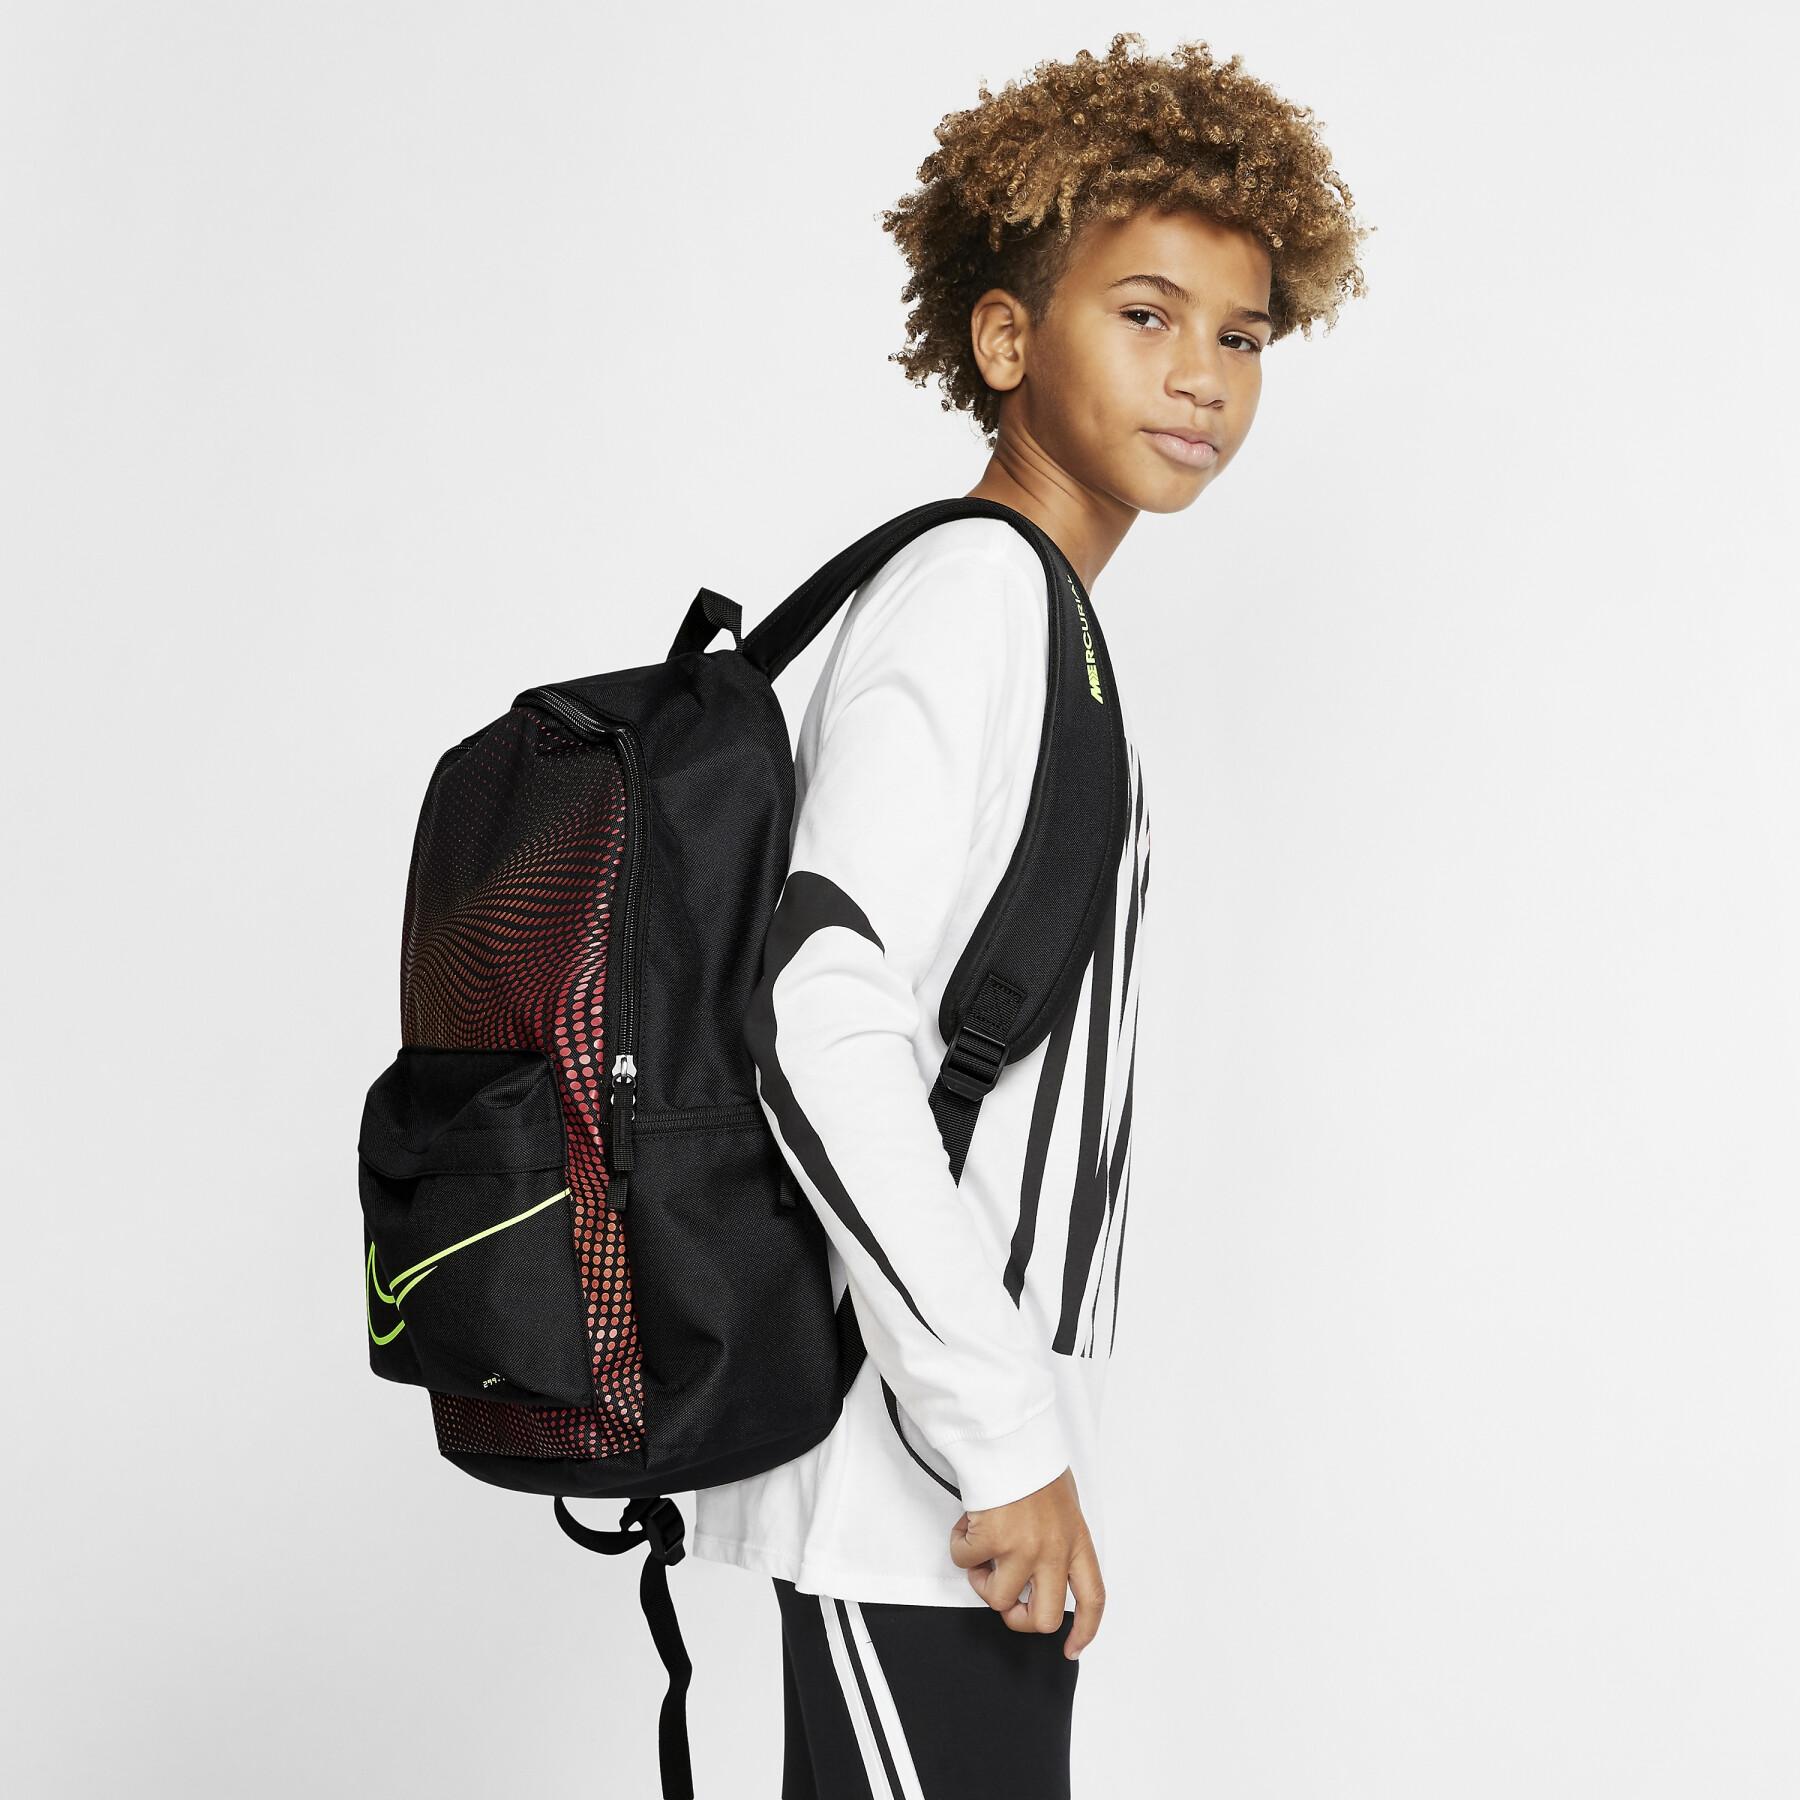 Ryggsäck för barn Nike Mercurial Series